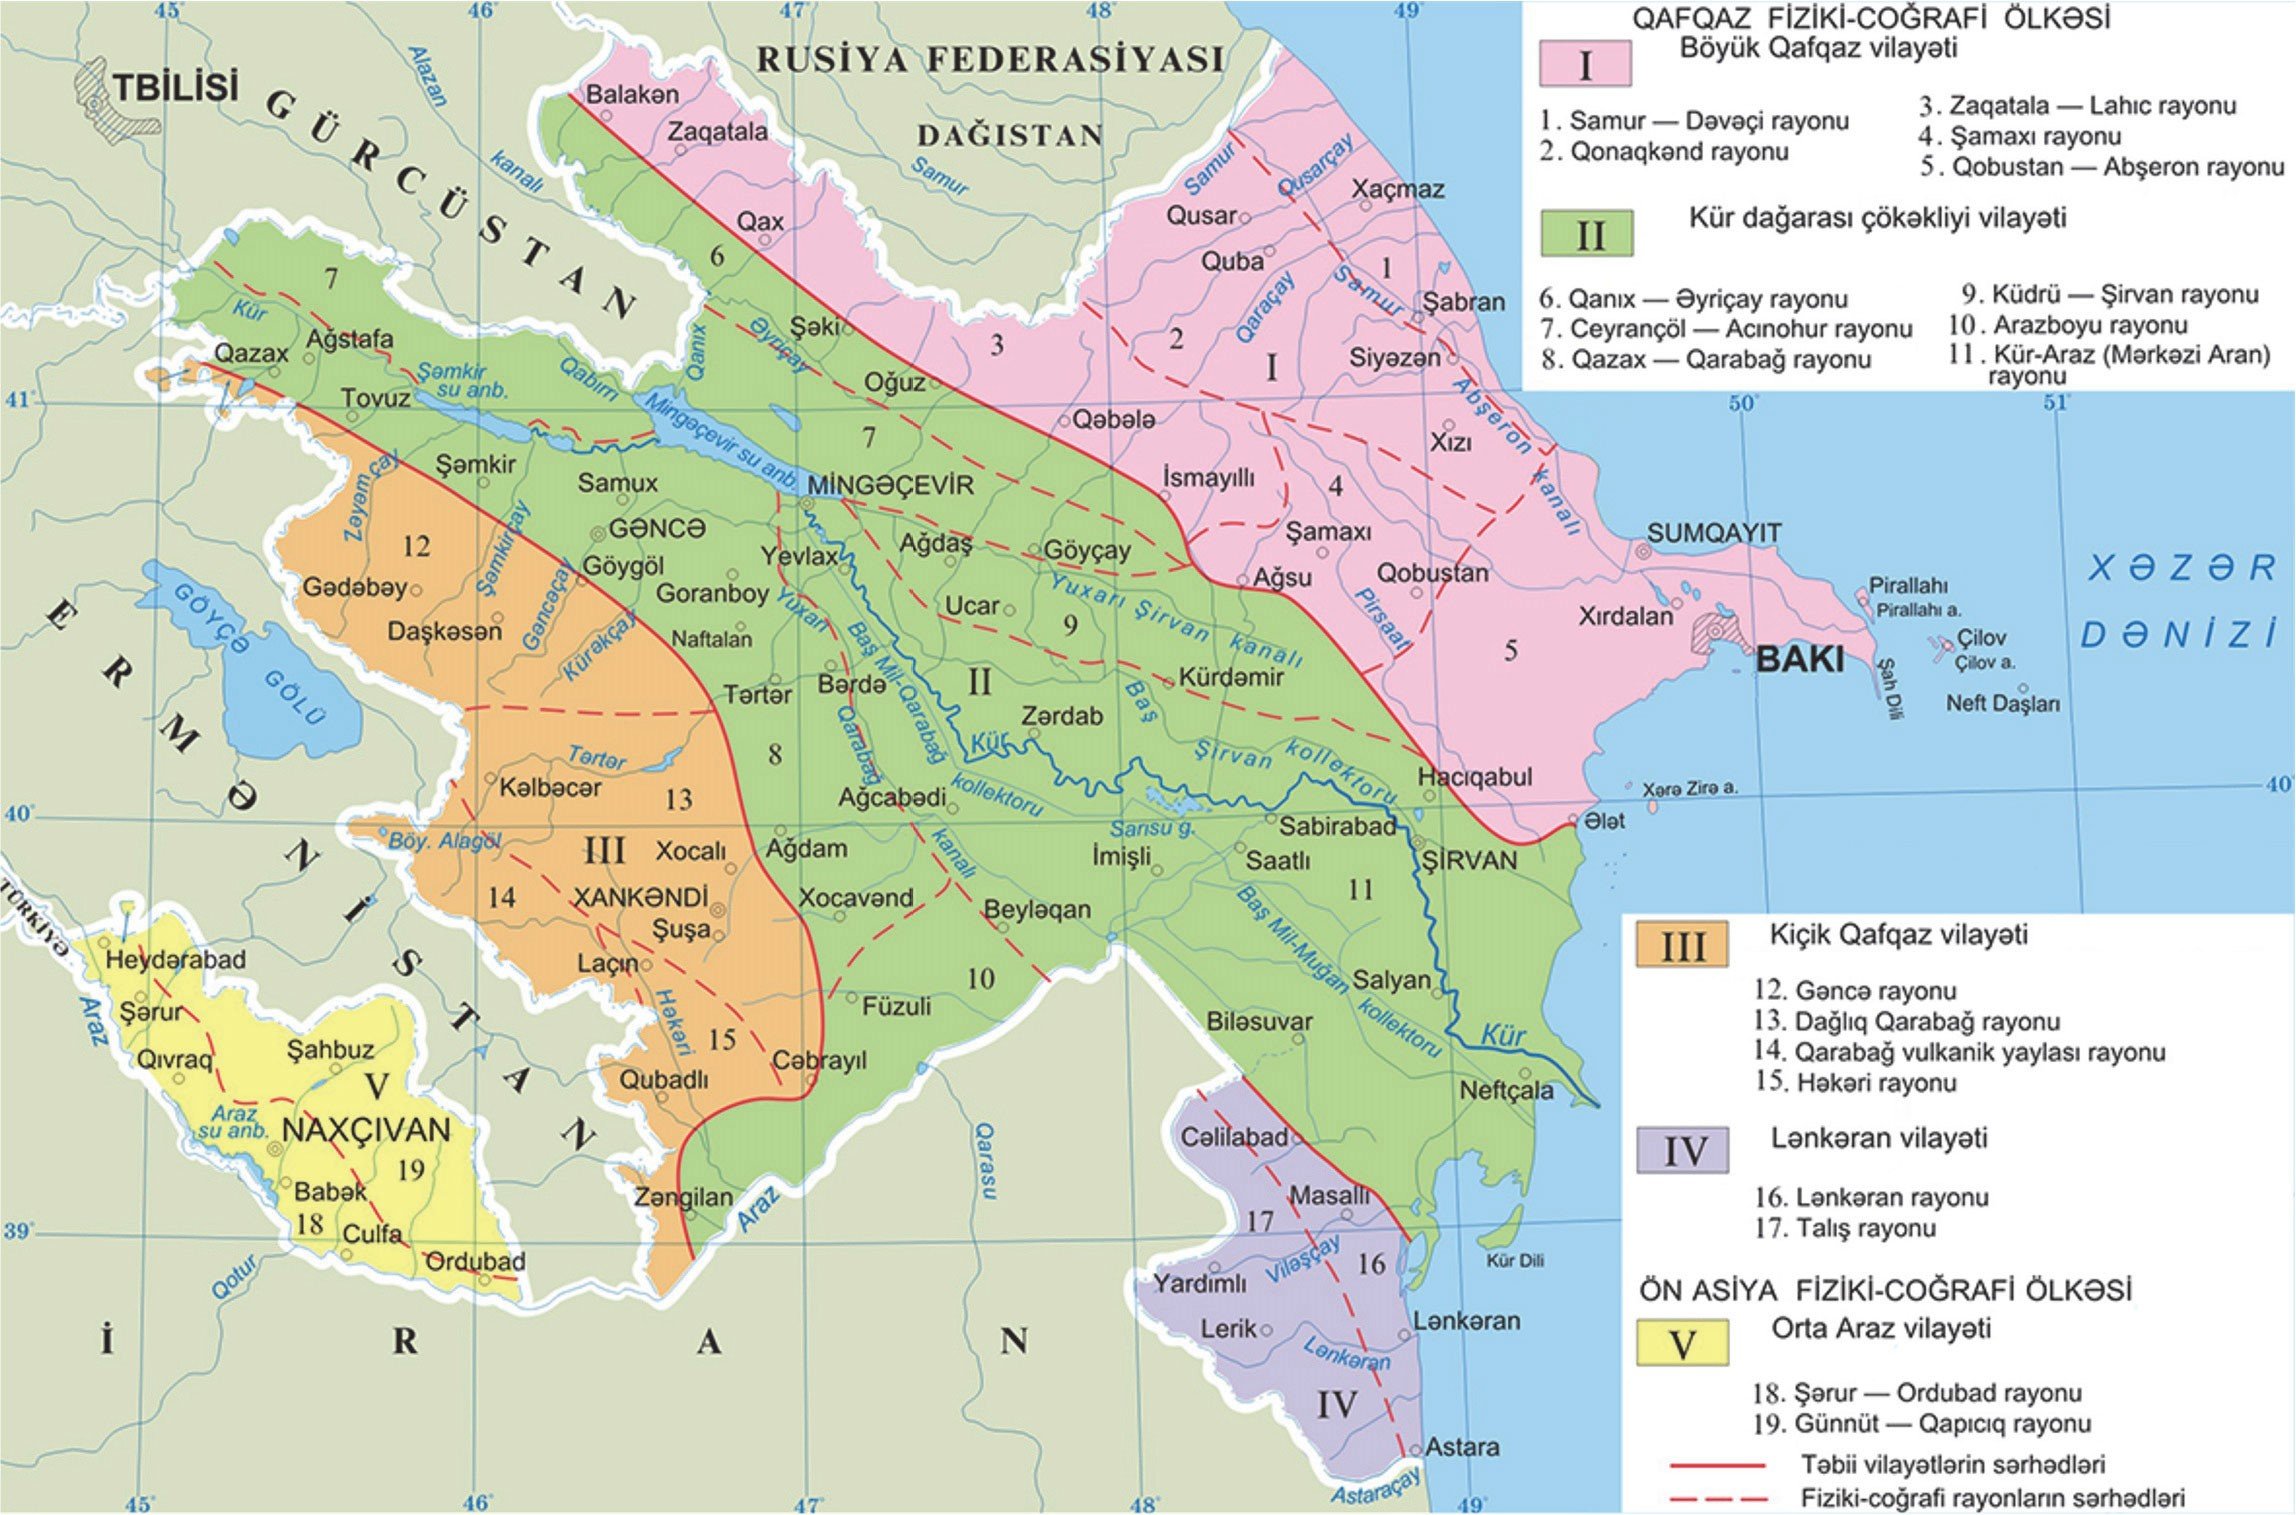 Зона азербайджана